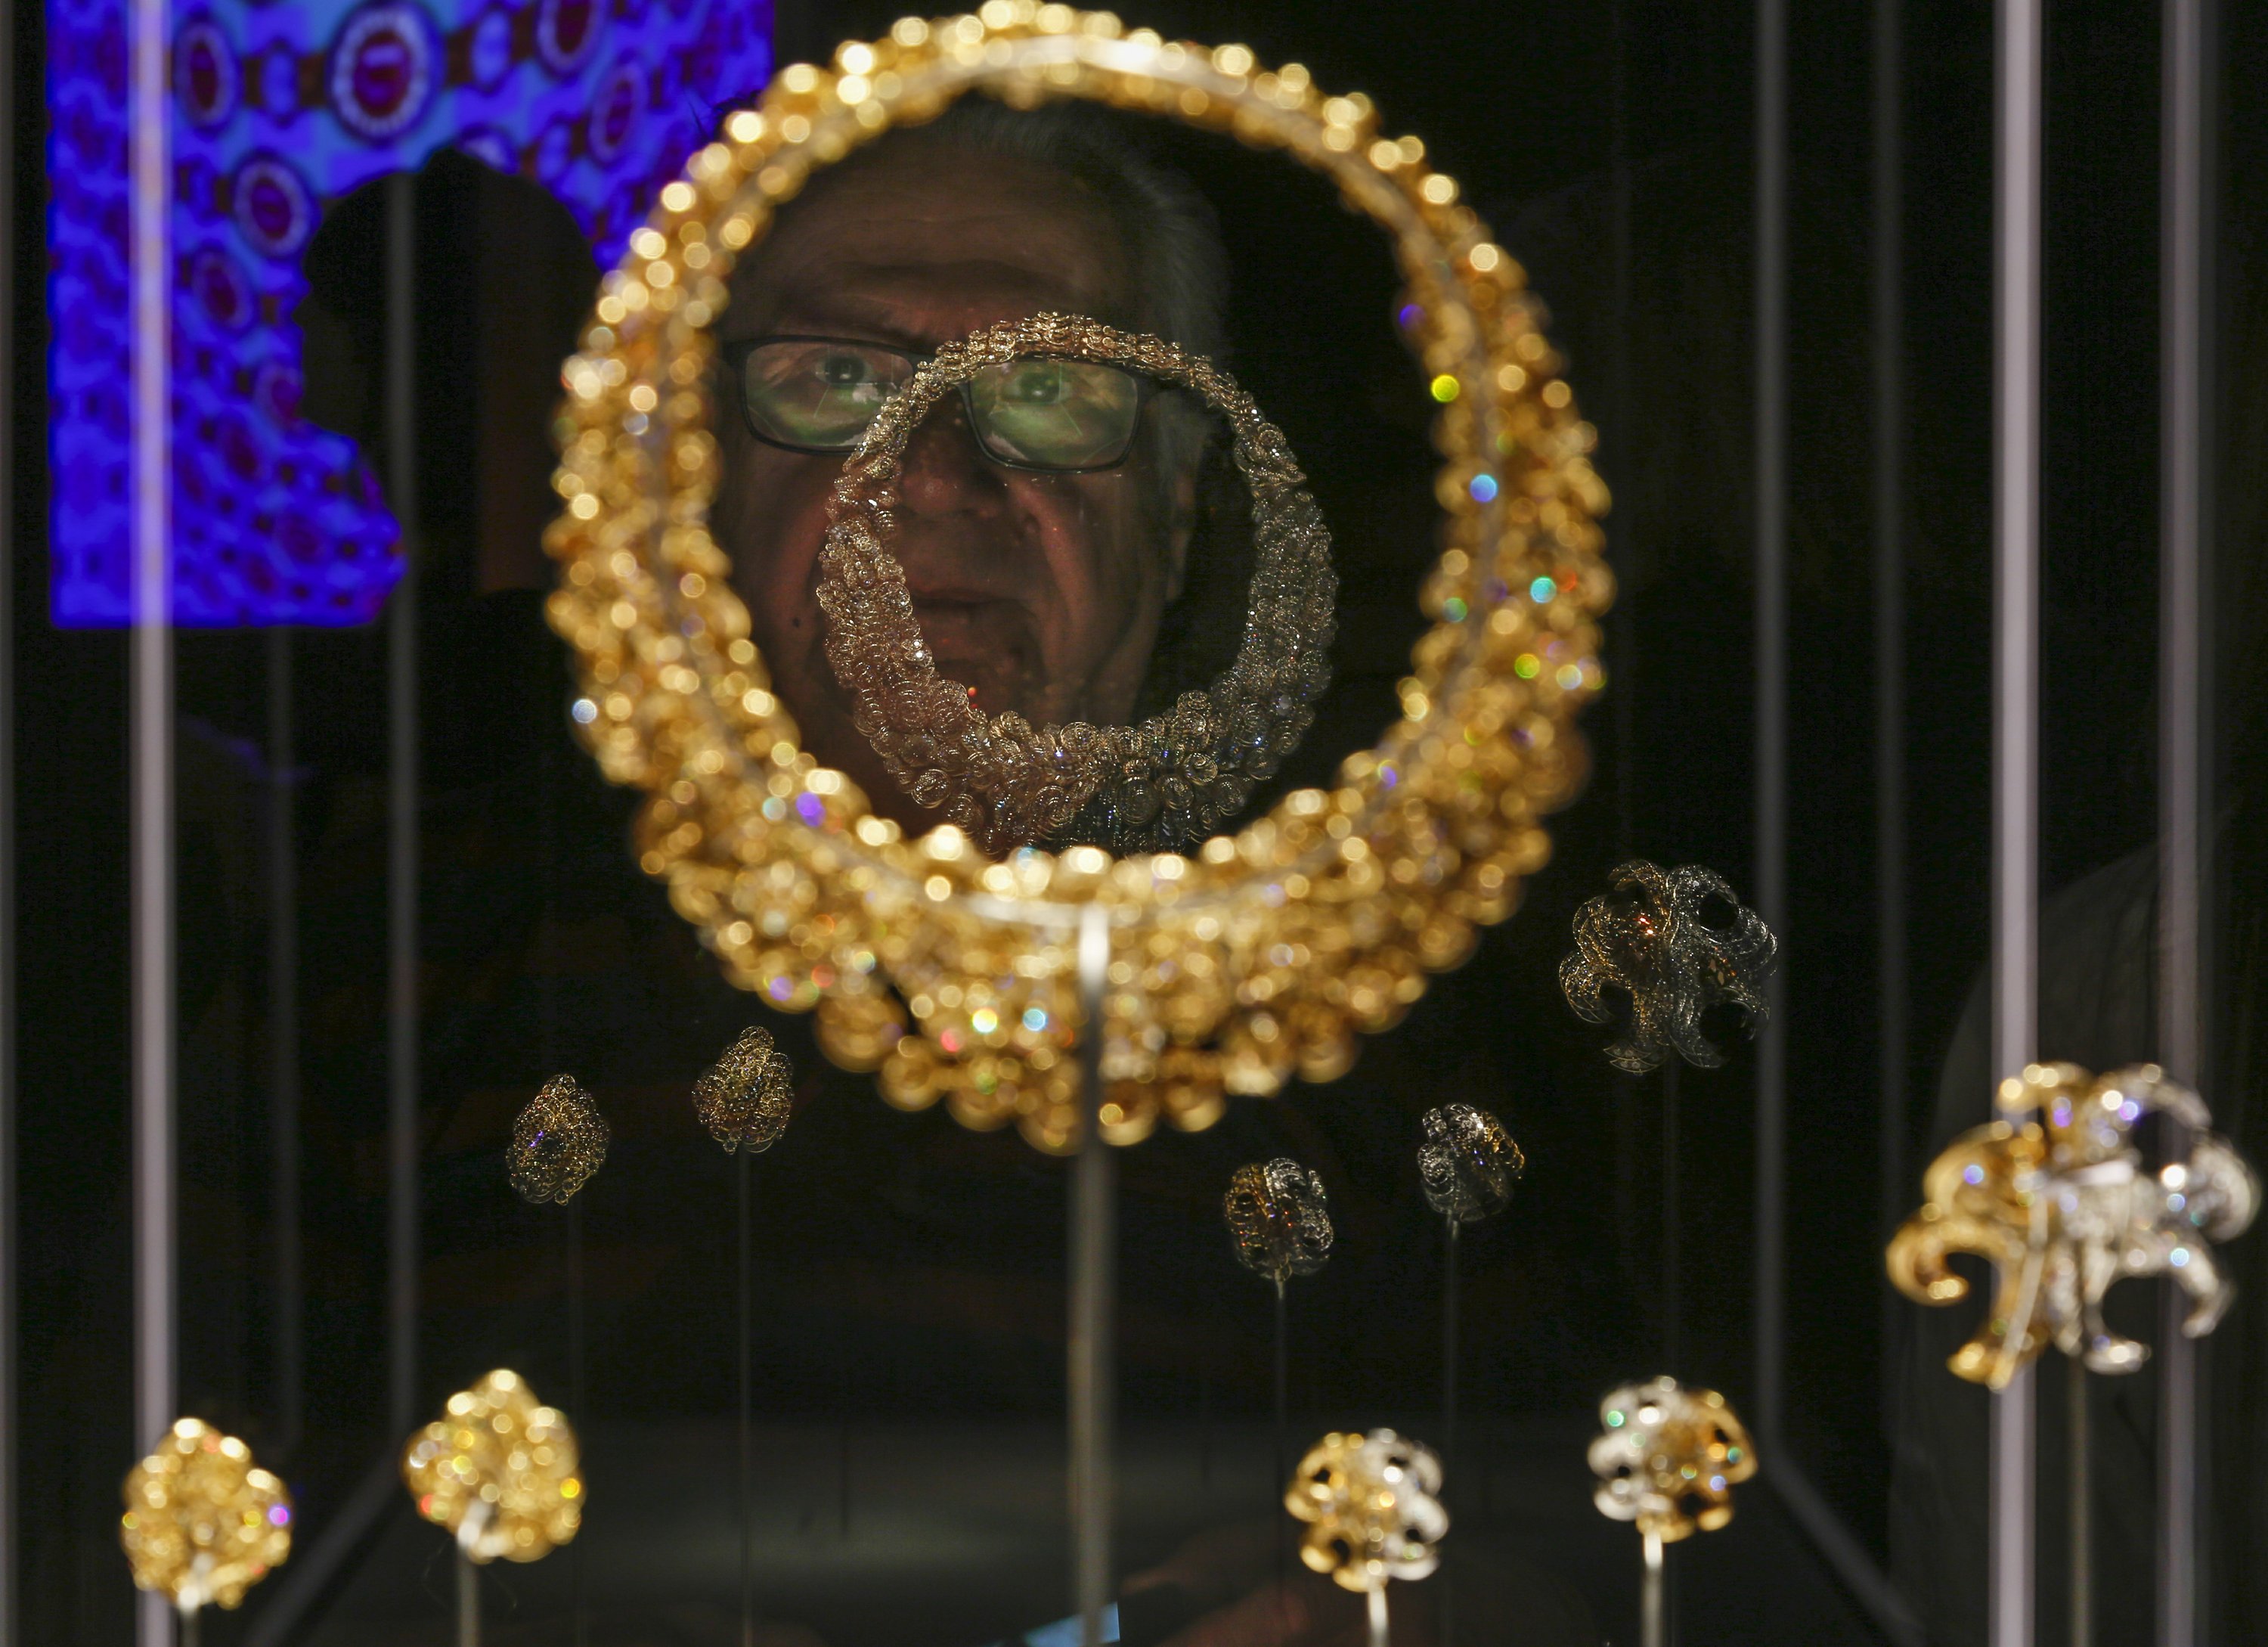 bulgari jewelry exhibition